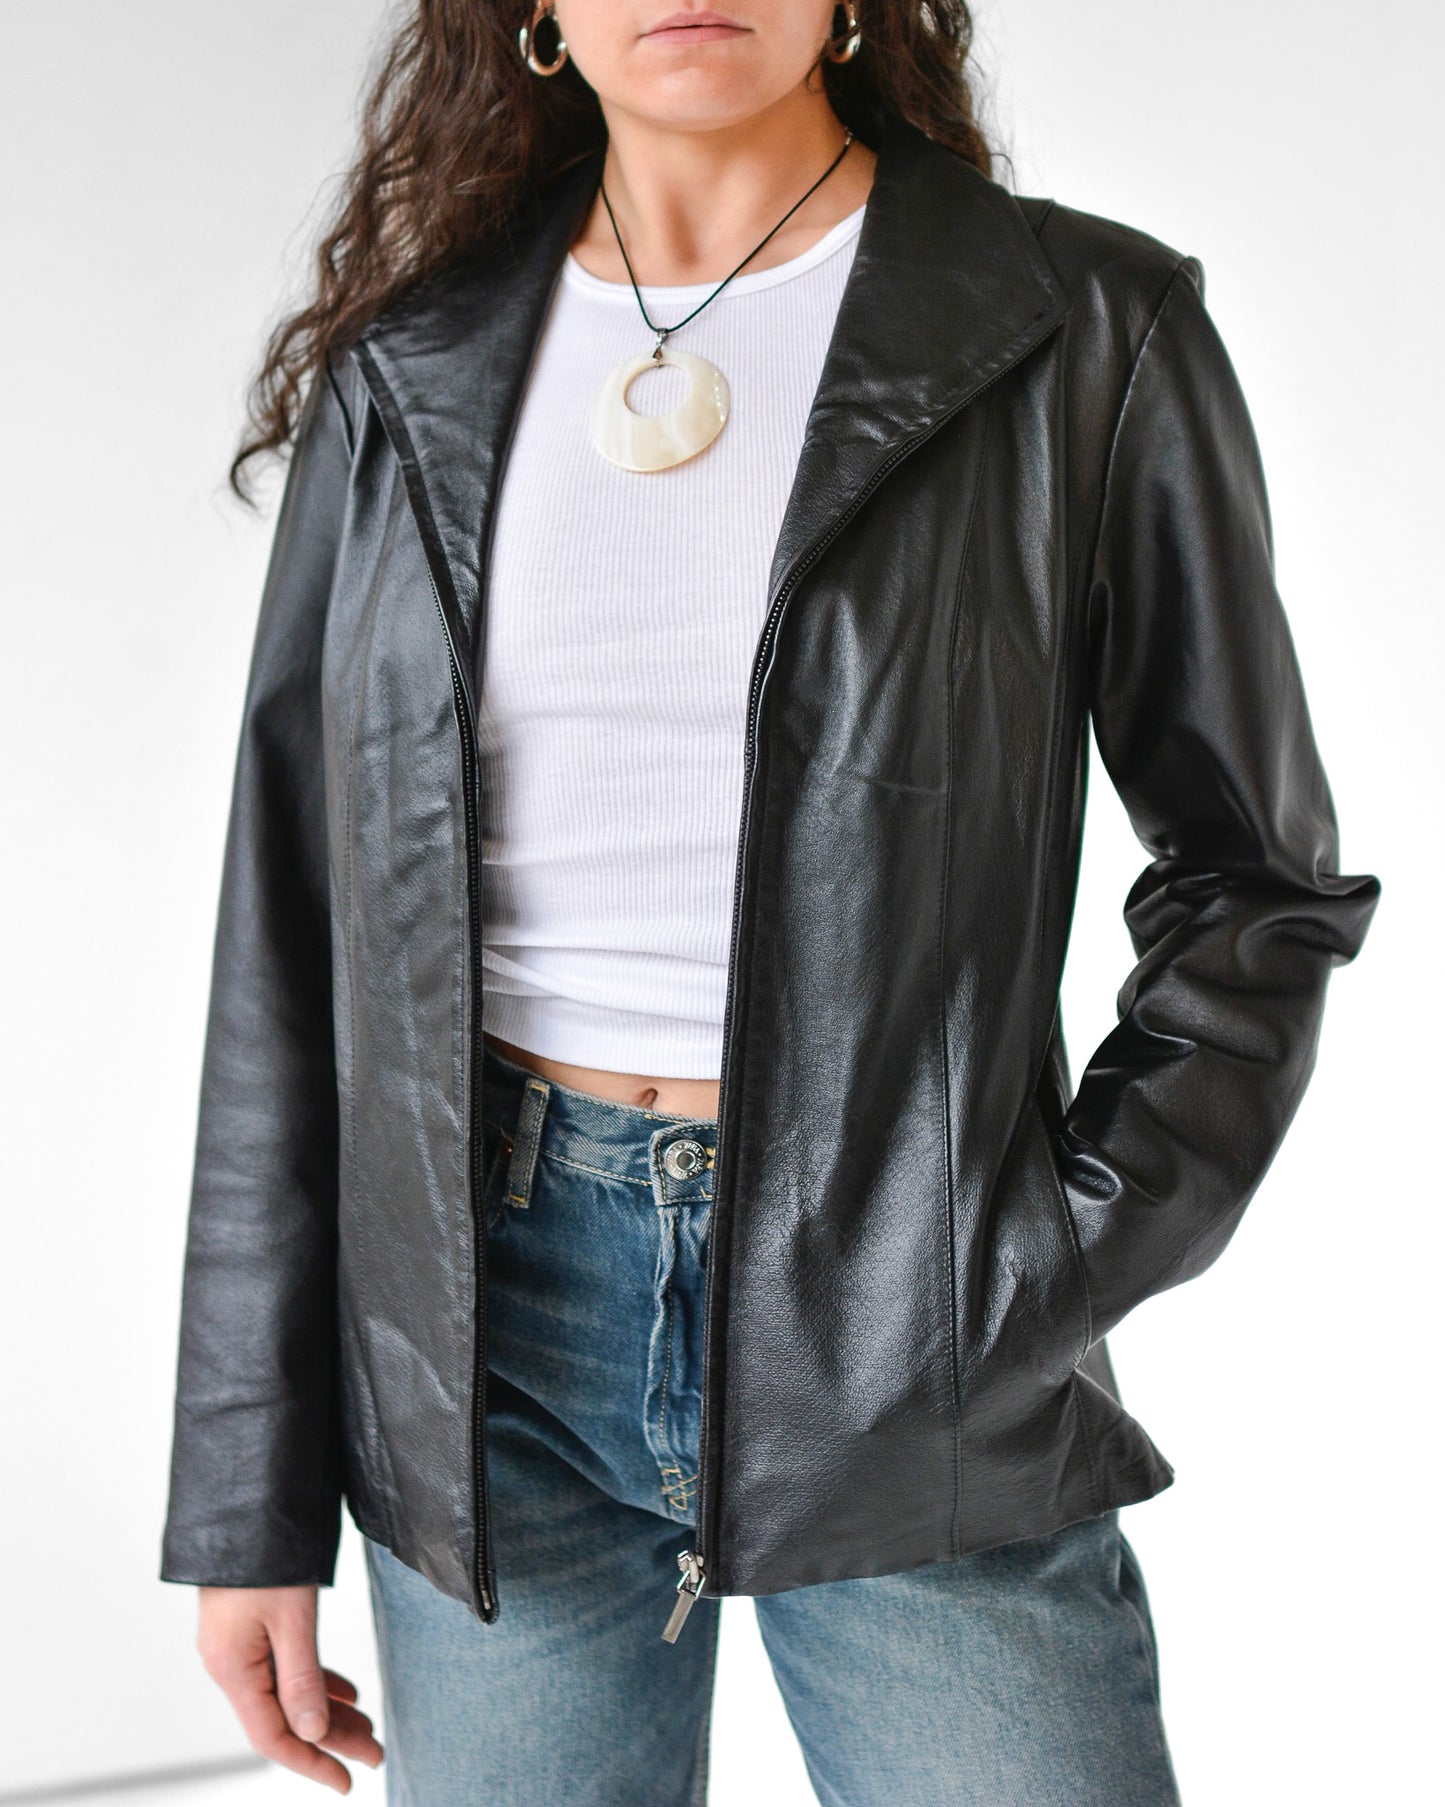 Black Paneled Leather Jacket (M)